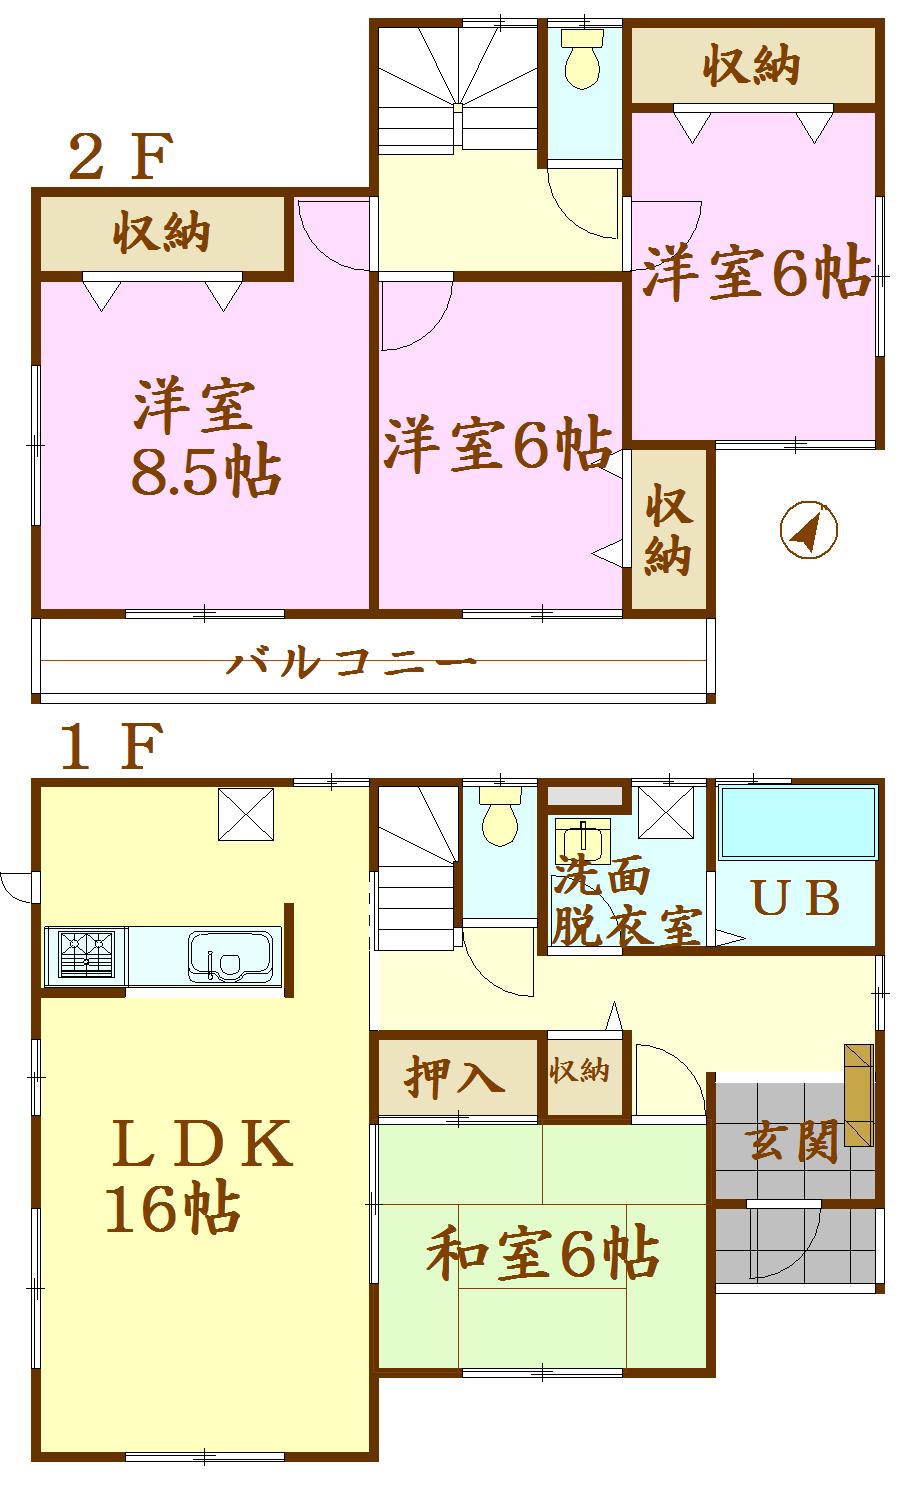 Floor plan. 28.8 million yen, 4LDK, Land area 194.16 sq m , Building area 105.98 sq m